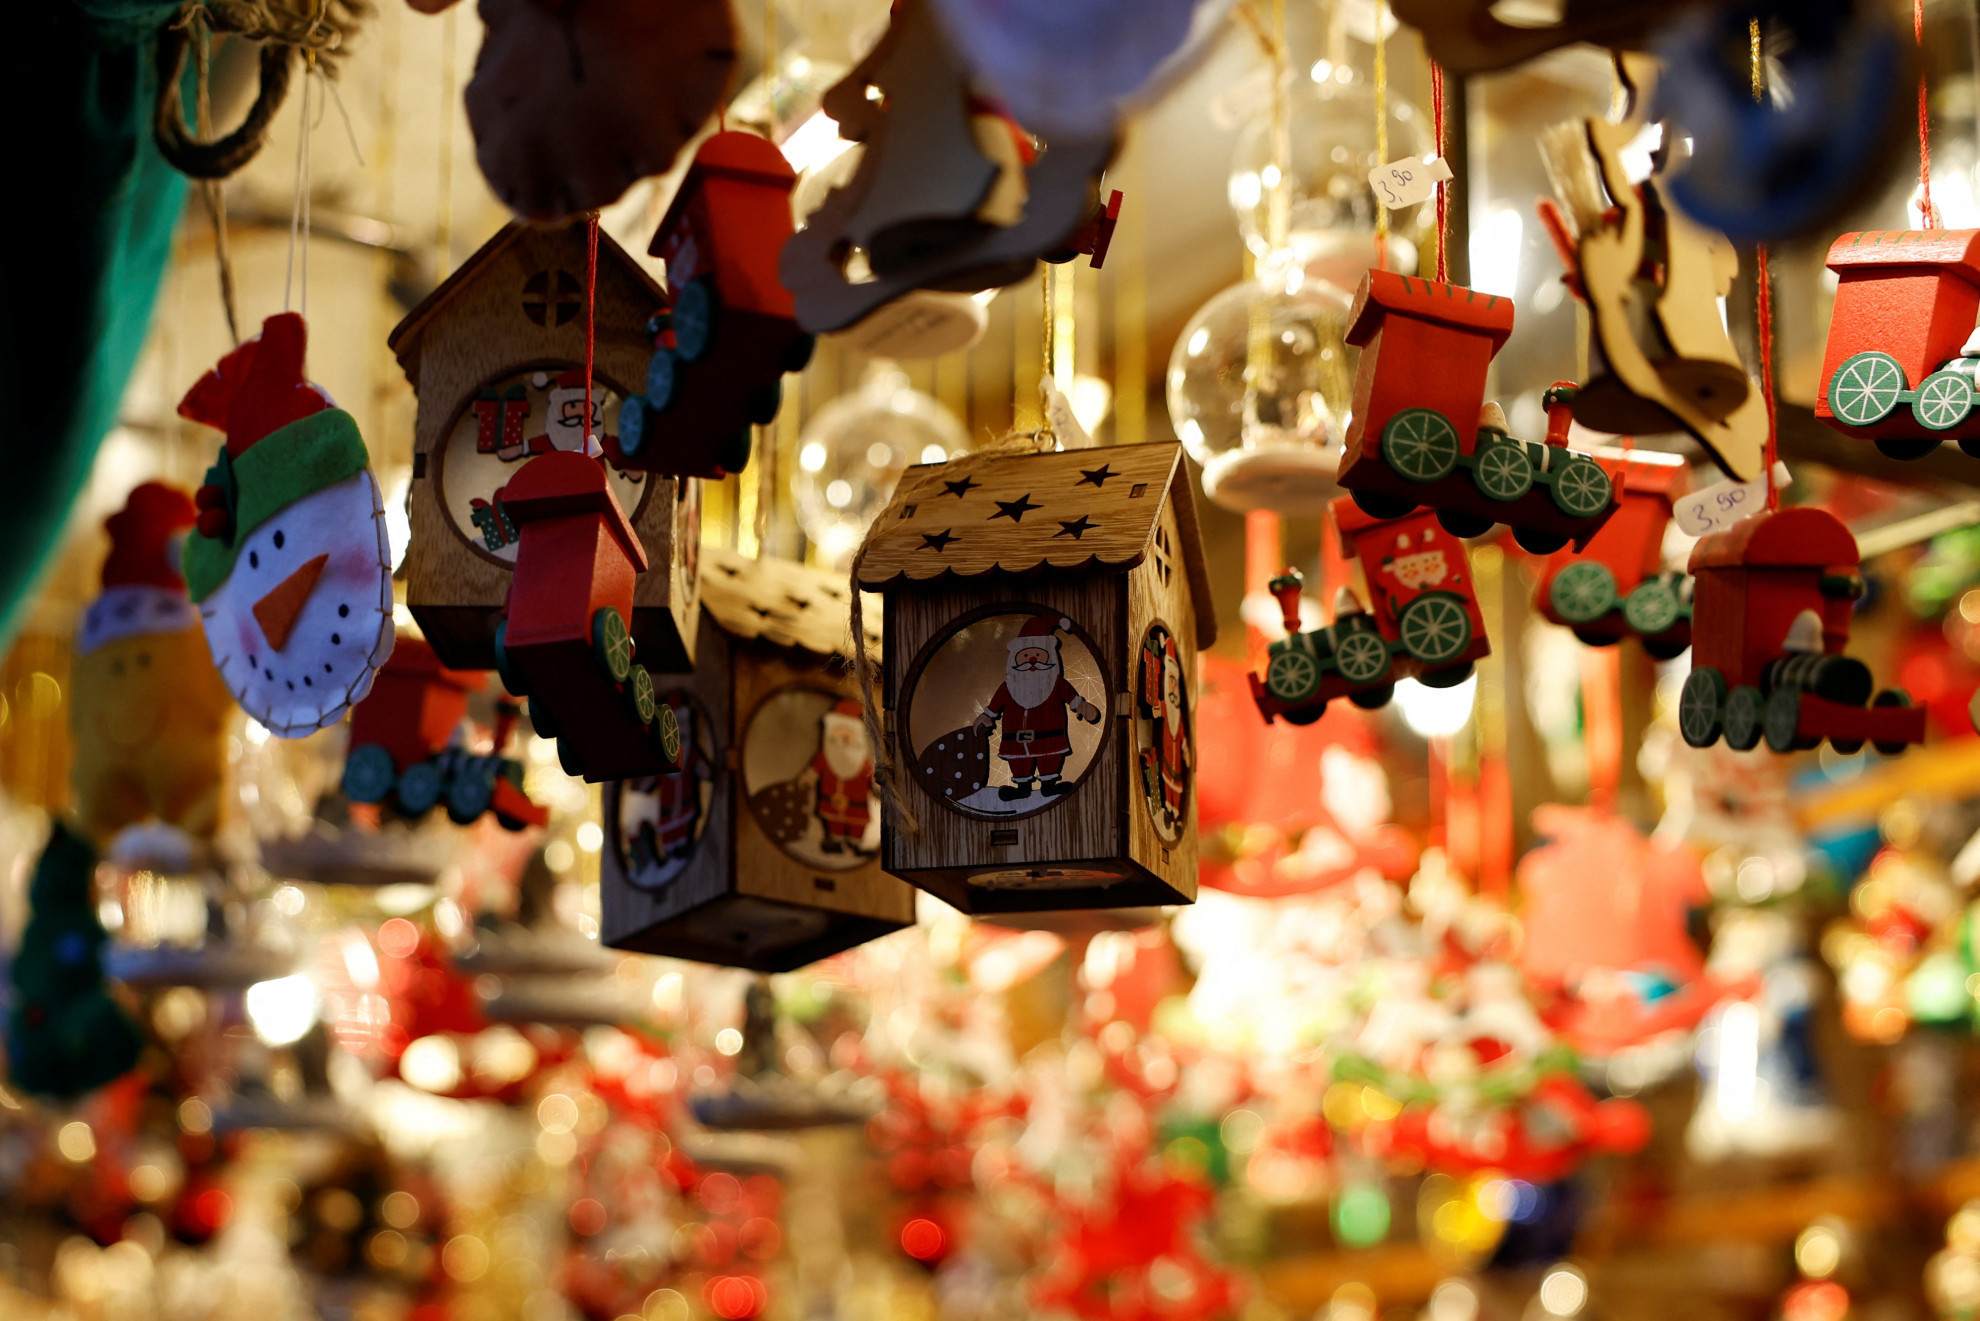 Fra mercatini e concerti natalizi, si apre la festa per l'Avvento -  Ticinonline